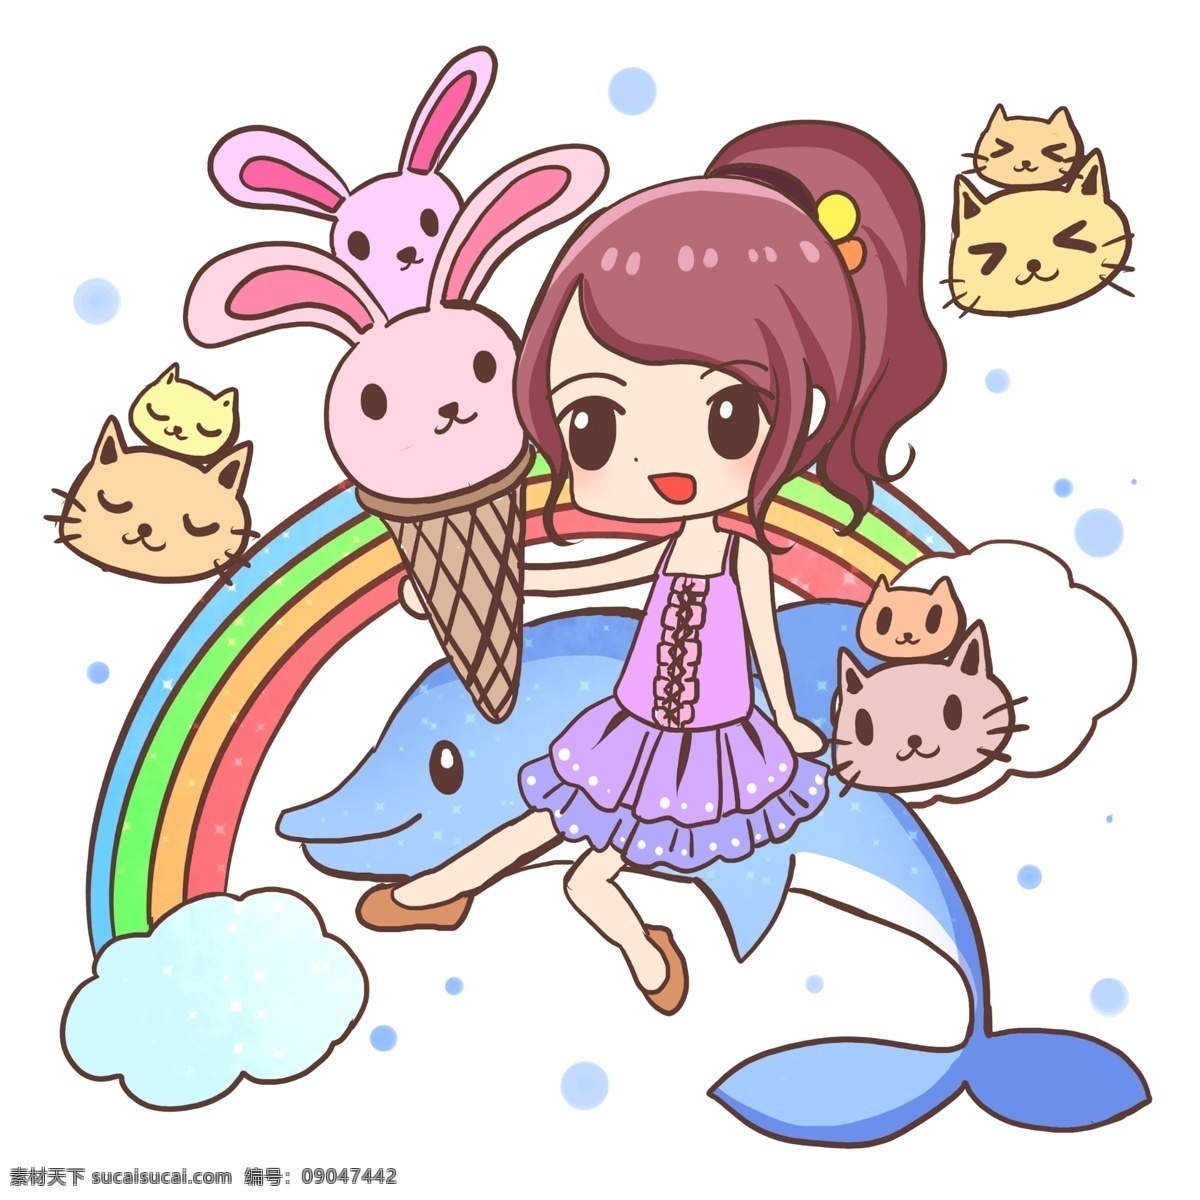 夏日 女孩 小 动物 夏天 海豚 兔子 猫咪 彩虹 嬉戏 冰淇淋 甜筒 冰棒 凉爽 女孩子 可爱 好吃 美味 裙子